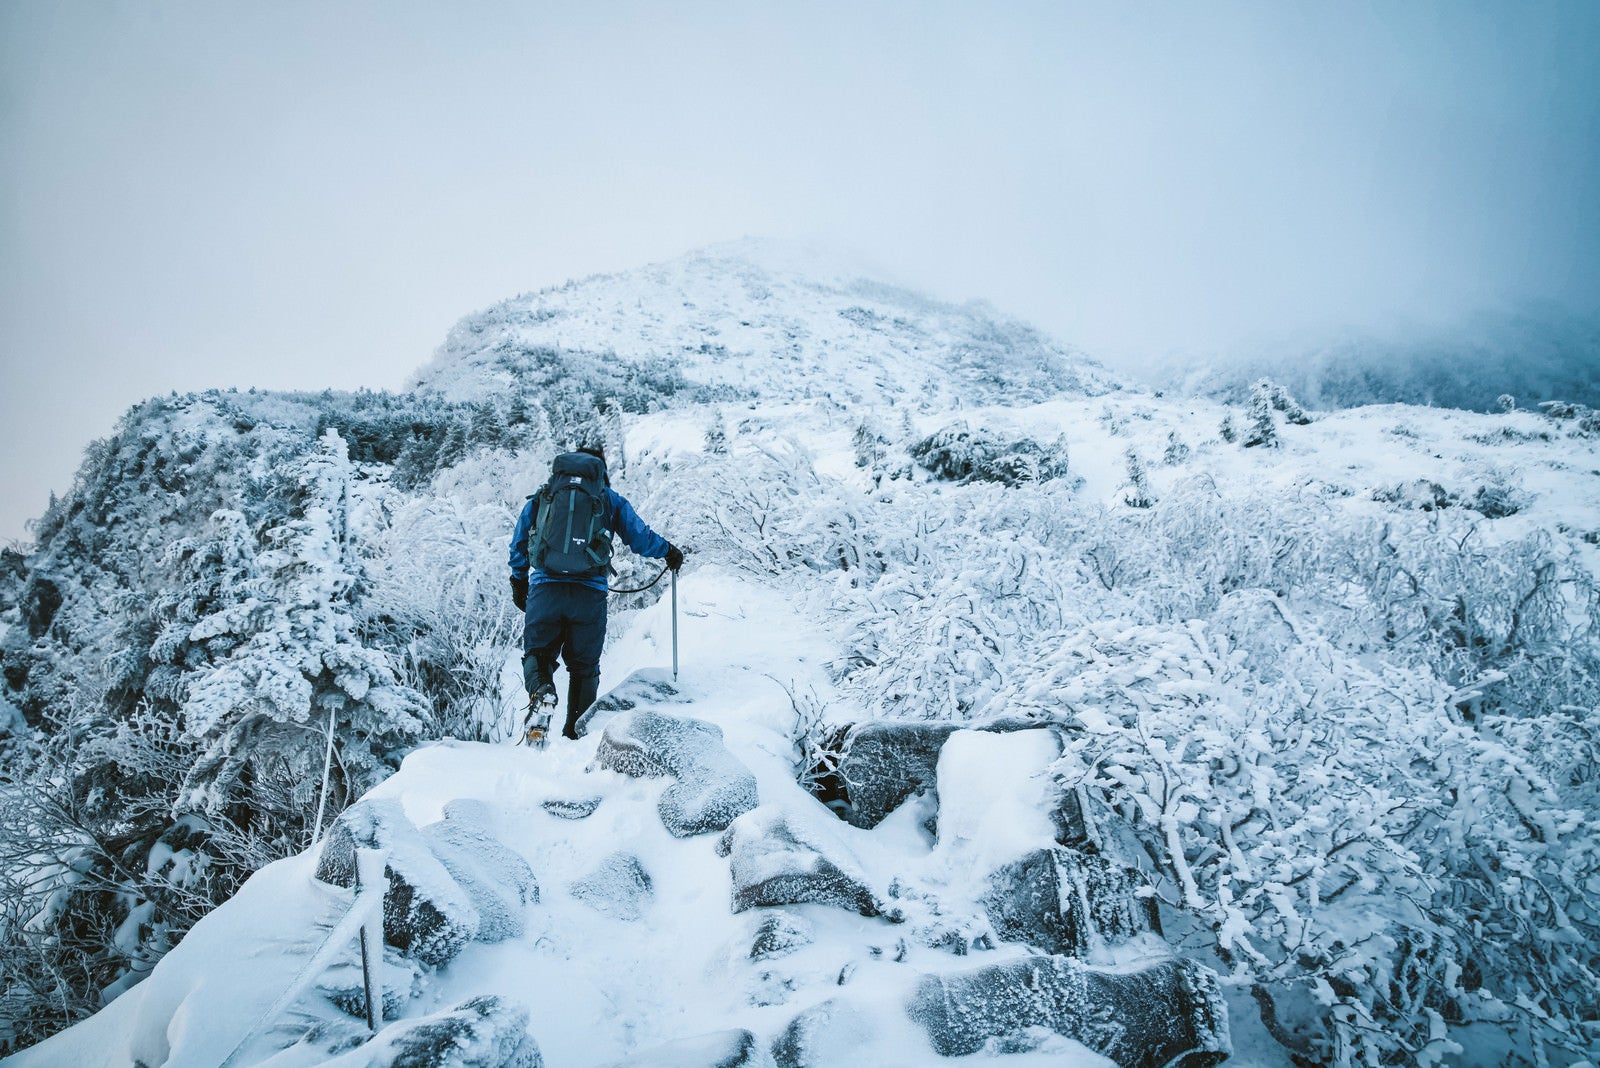 「厳冬の登山道で道狭き場所を歩く登山者」の写真